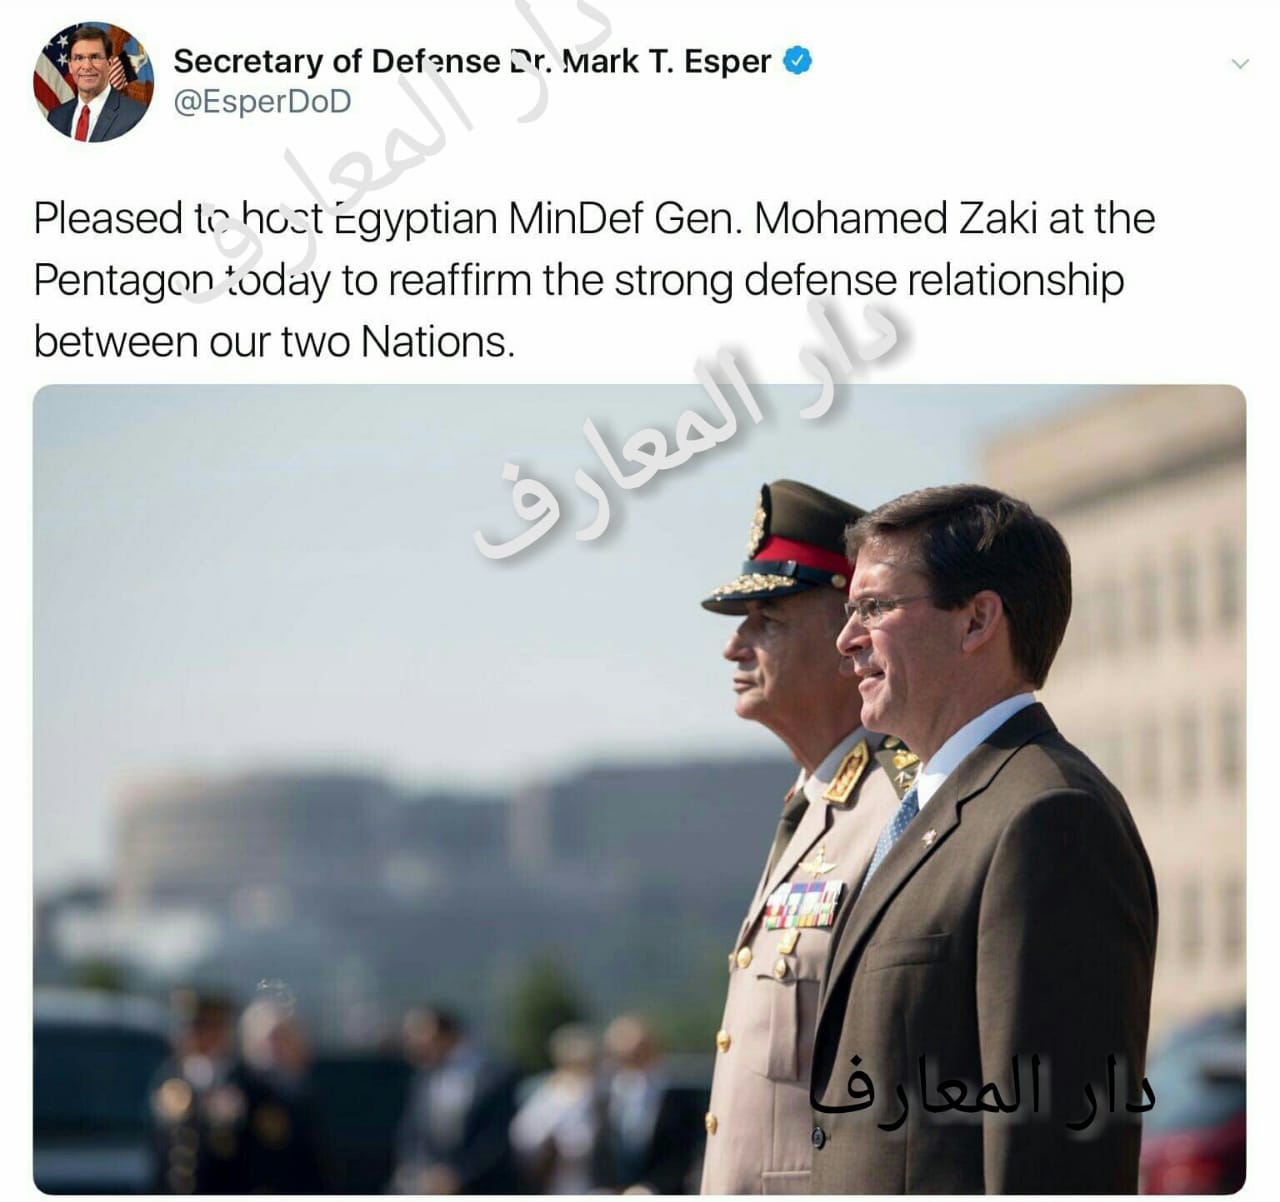   وزير الدفاع الأمريكى الجديد مارك أسبر يعرب عن سعادته باستقبال الفريق أول محمد زكى 